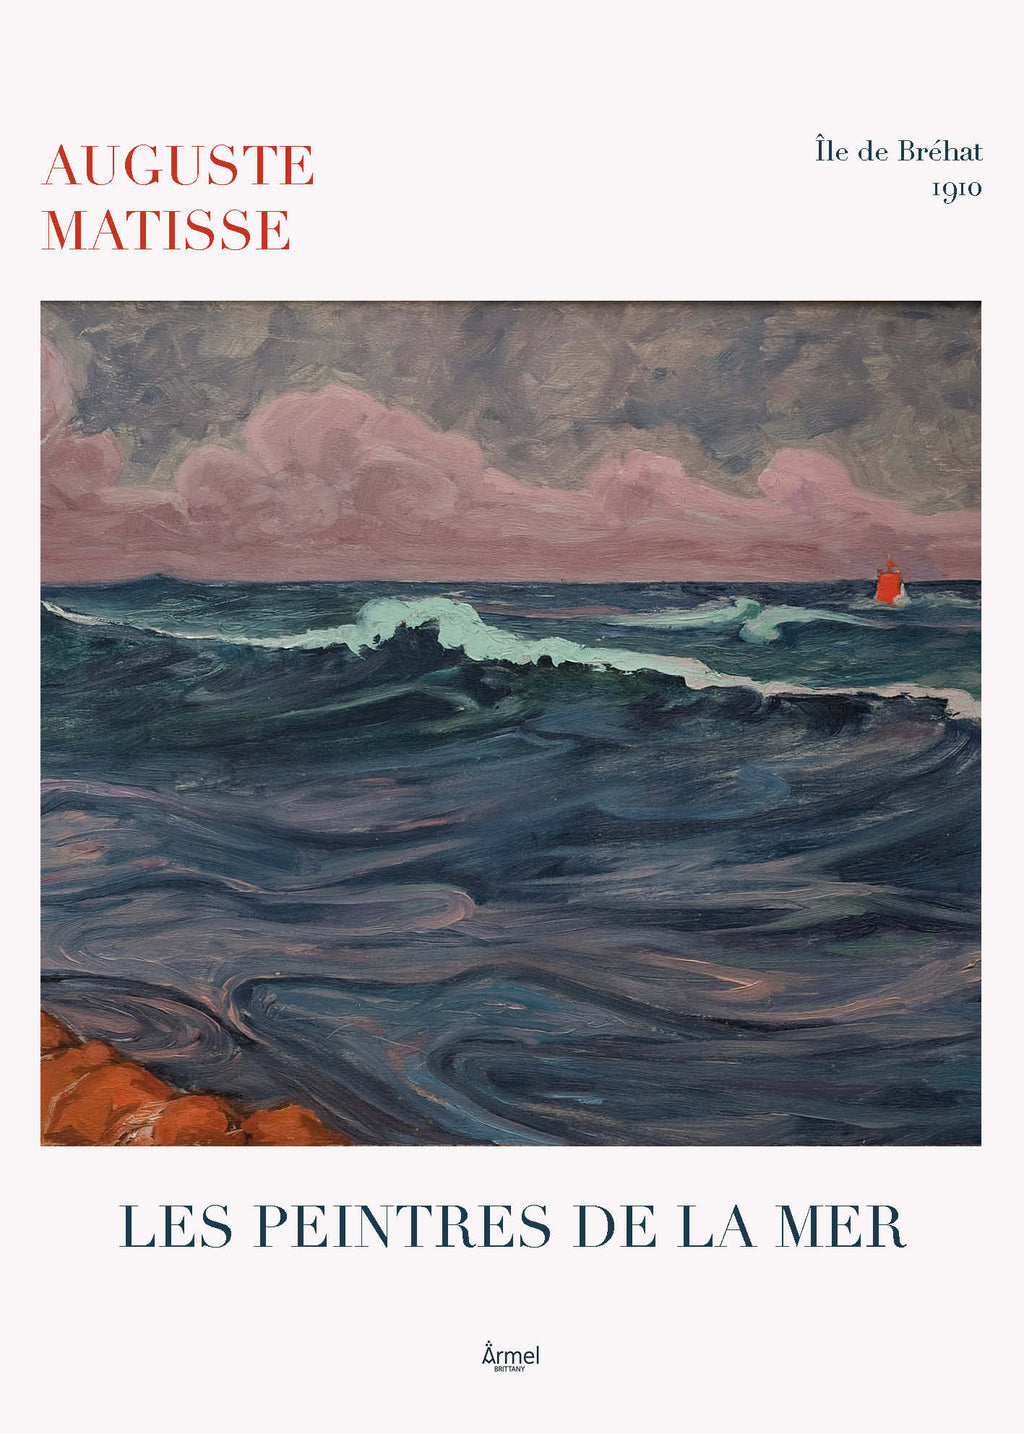 Auguste Matisse peintre officiel de la Marine. Peintre de l'ile de Brehat. Meheut, henri rivière. marque bretagne armel brittany